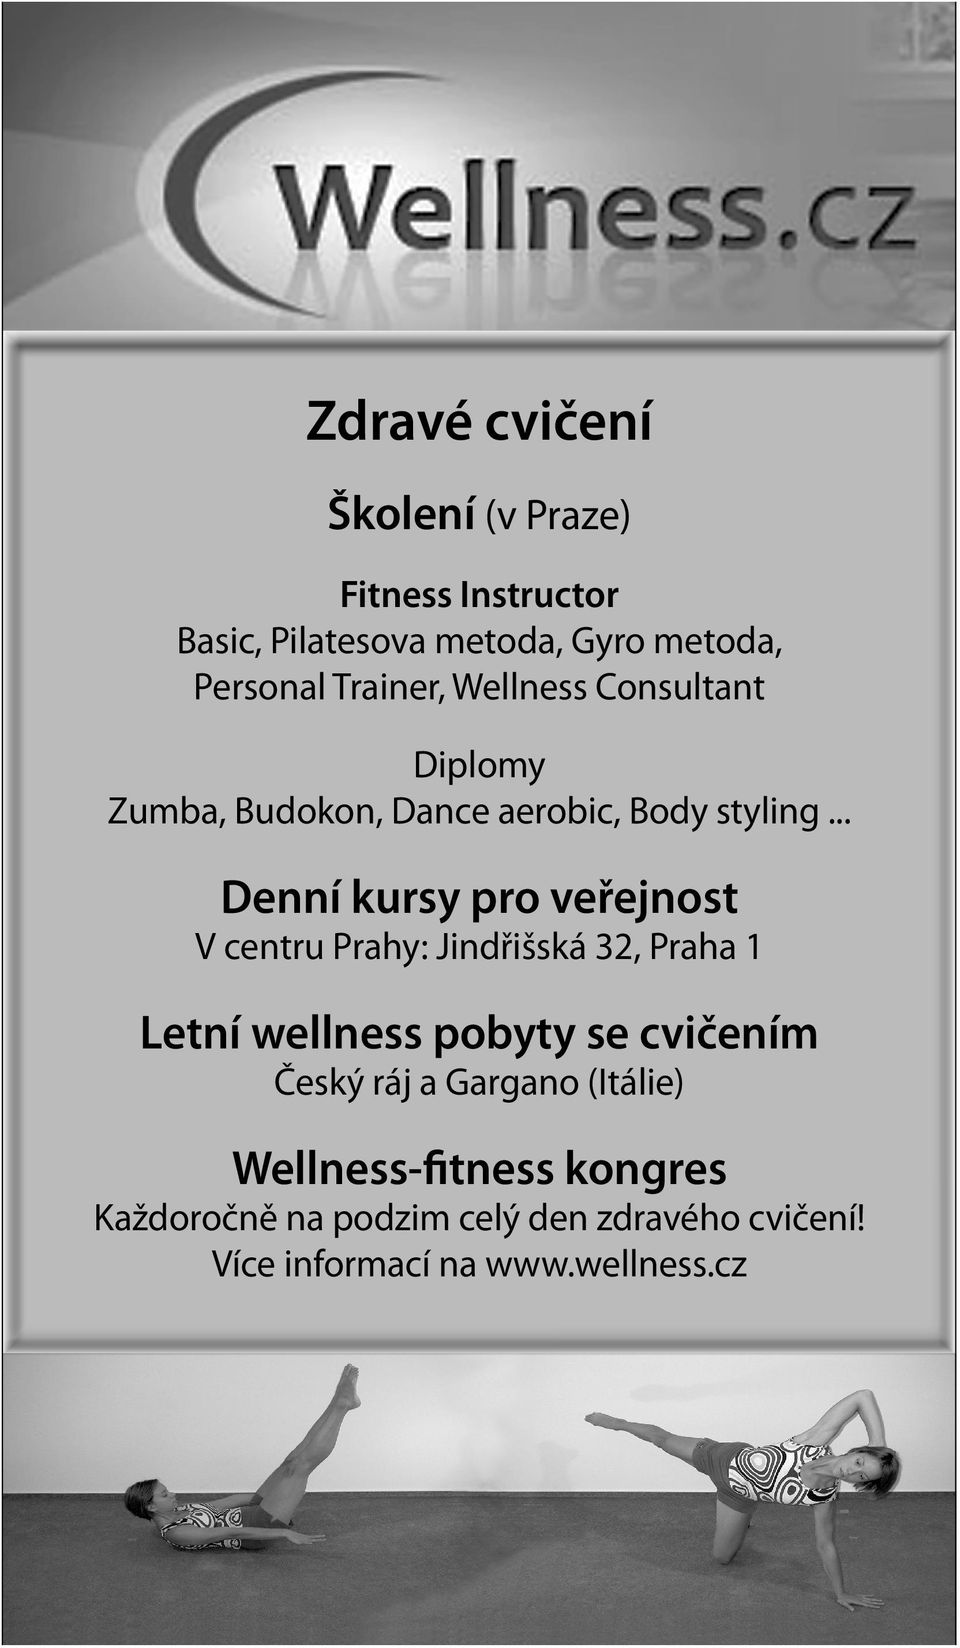 .. Denní kursy pro veřejnost V centru Prahy: Jindřišská 32, Praha 1 Letní wellness pobyty se cvičením